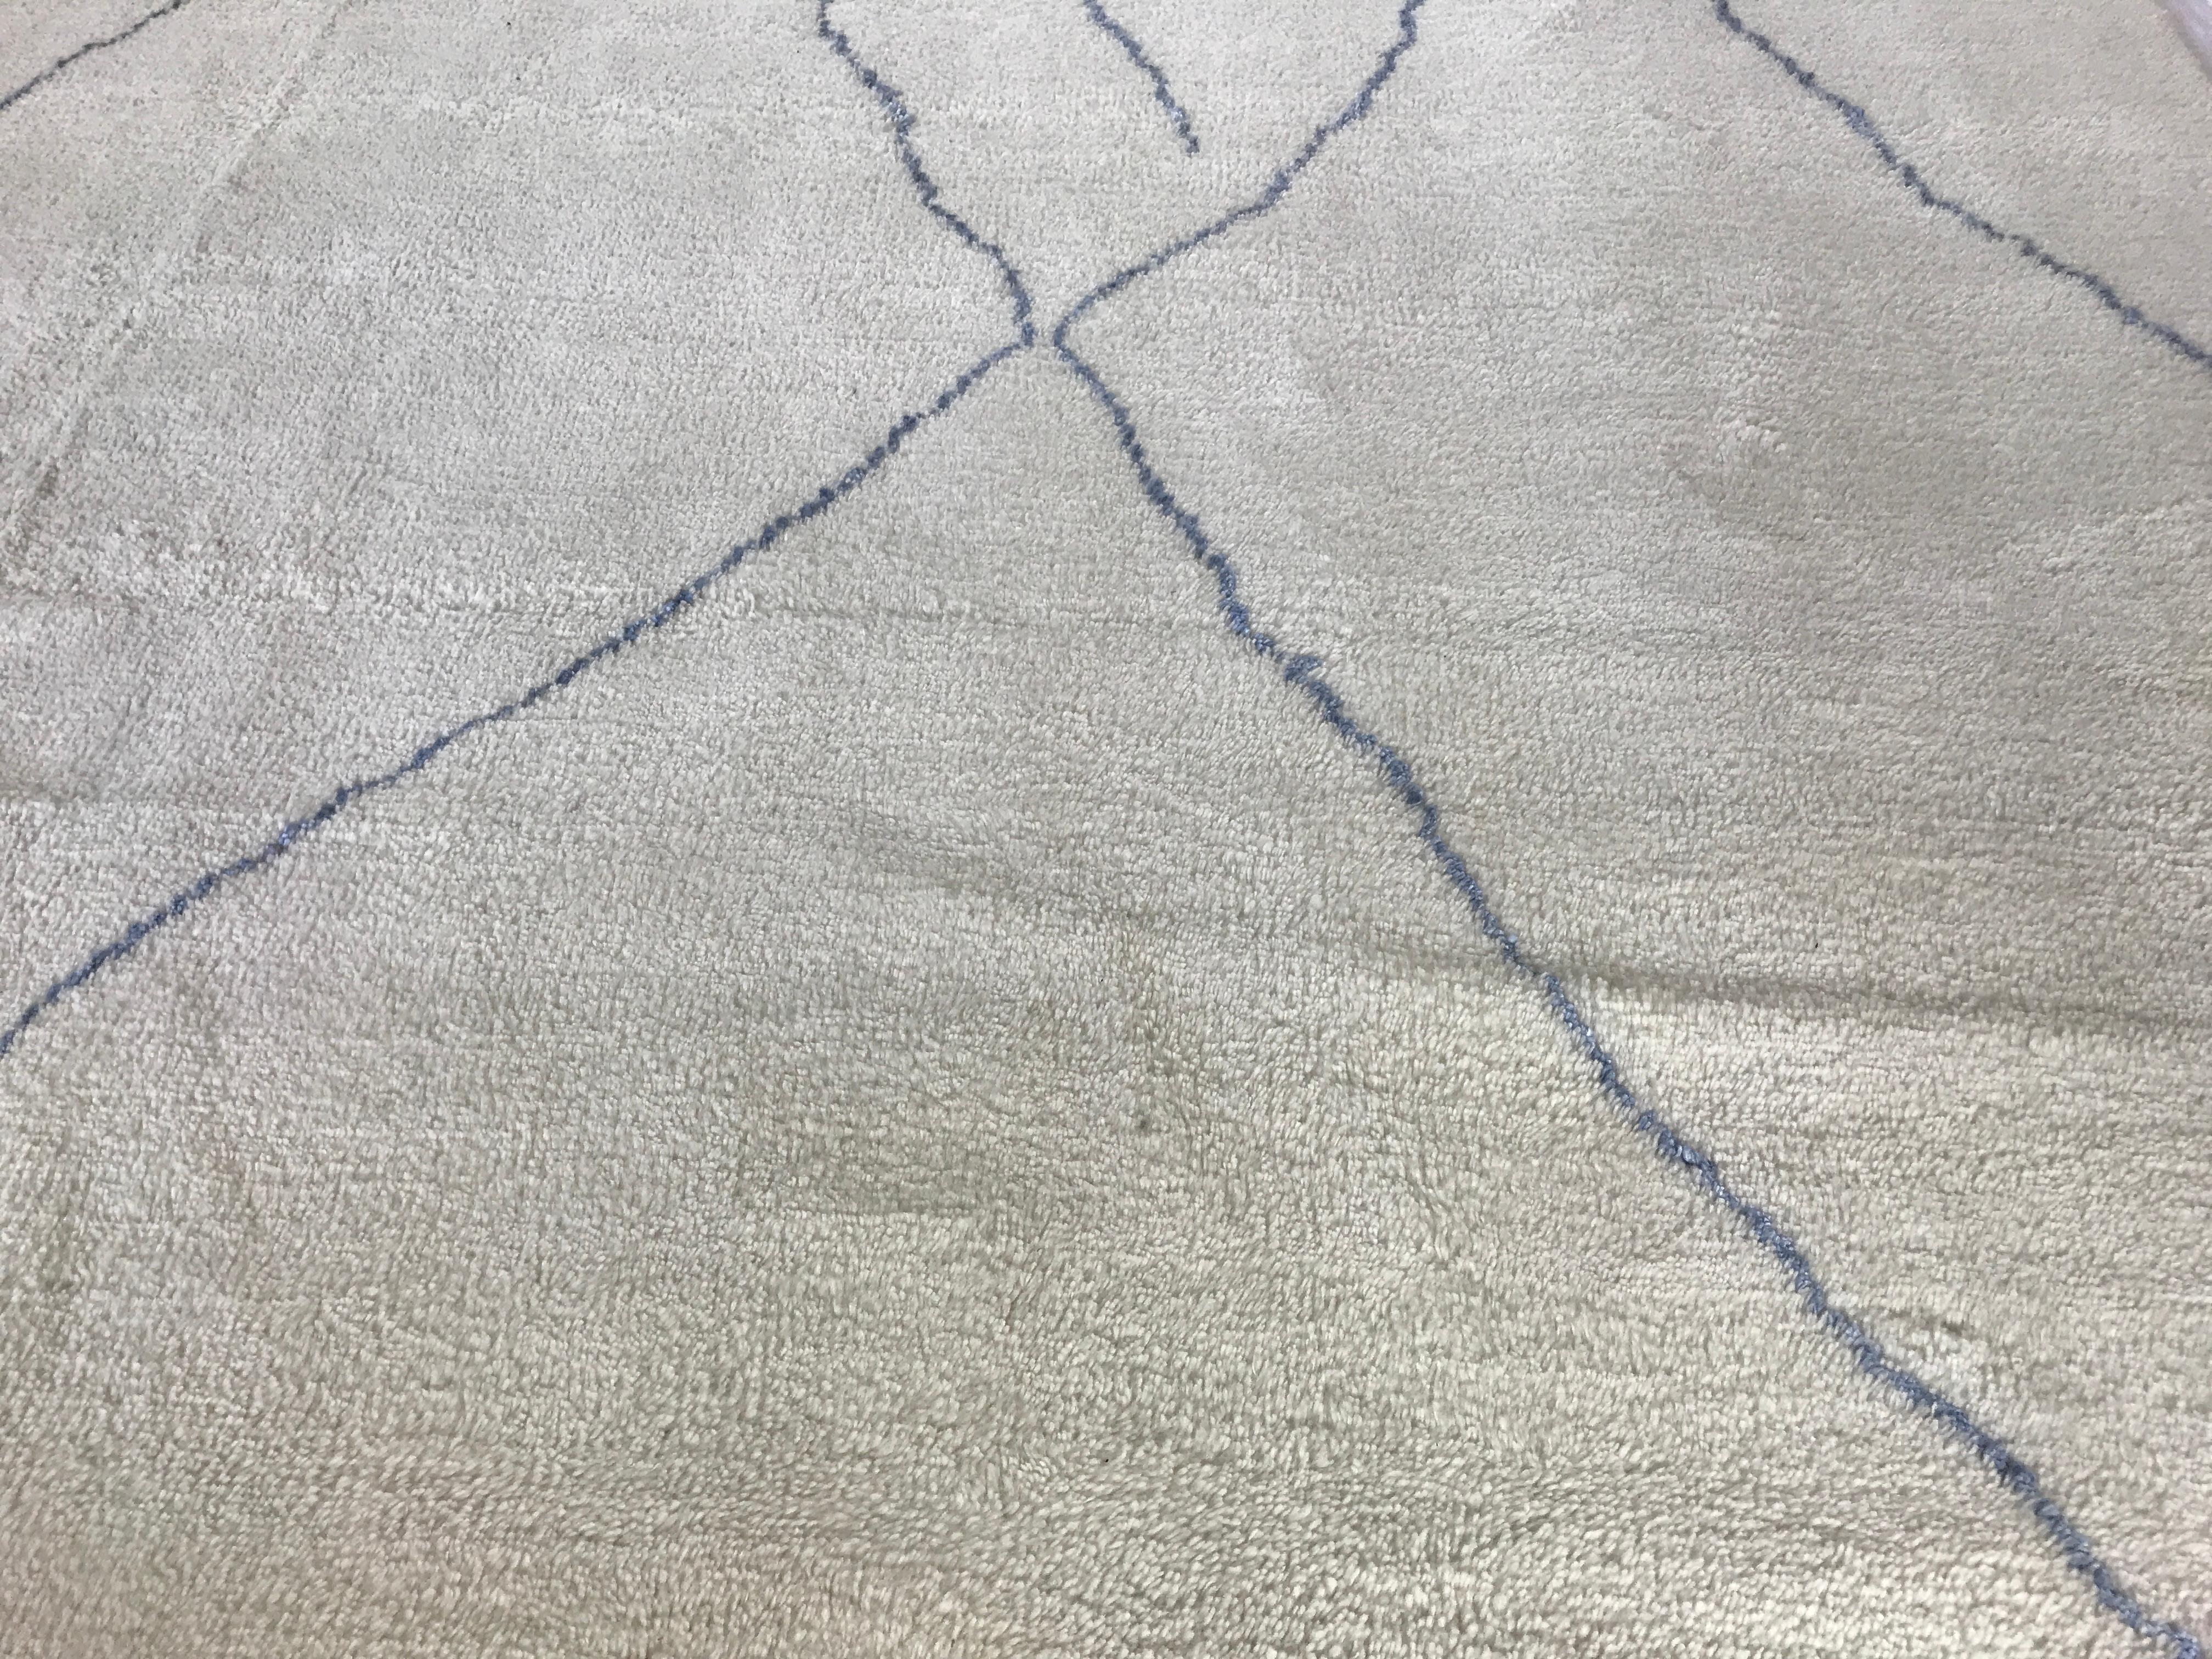 Dieser fast quadratische, cremefarbene Teppich zeichnet sich durch eine kühne blaue Linie und ein kompliziertes, marokkanisch inspiriertes Muster aus, das aus hochwertiger Wolle gefertigt ist. Mit seiner einzigartigen Mischung aus Stil und